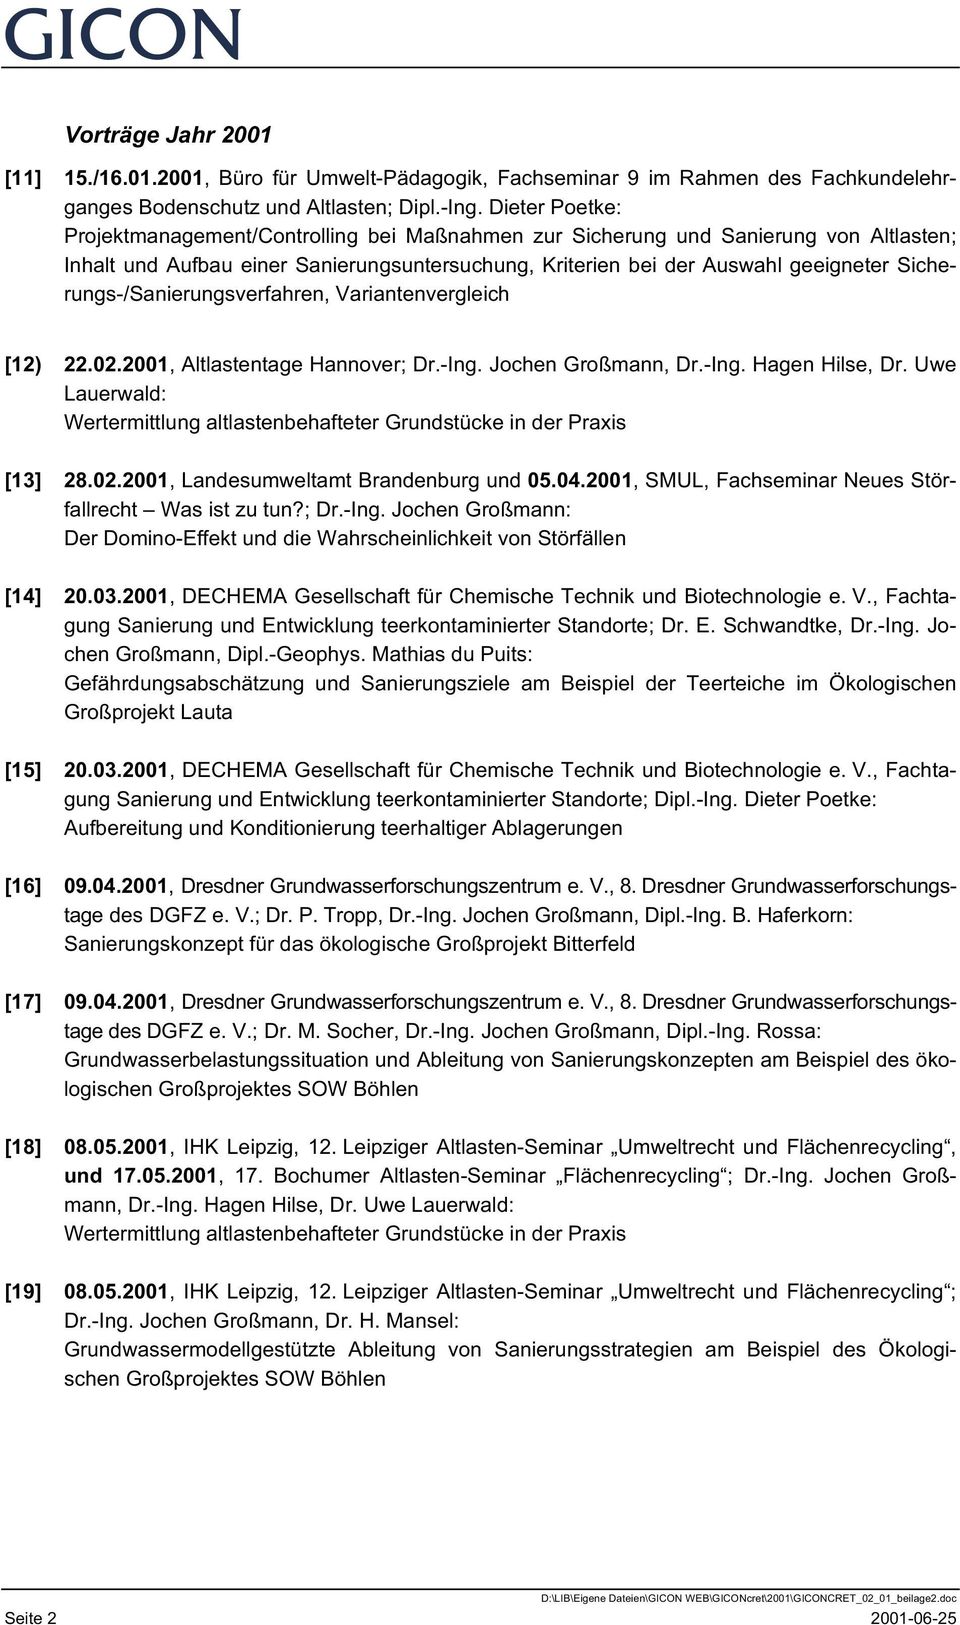 Sicherungs-/Sanierungsverfahren, Variantenvergleich [12) 22.02.2001, Altlastentage Hannover; Dr.-Ing. Jochen Großmann, Dr.-Ing. Hagen Hilse, Dr.